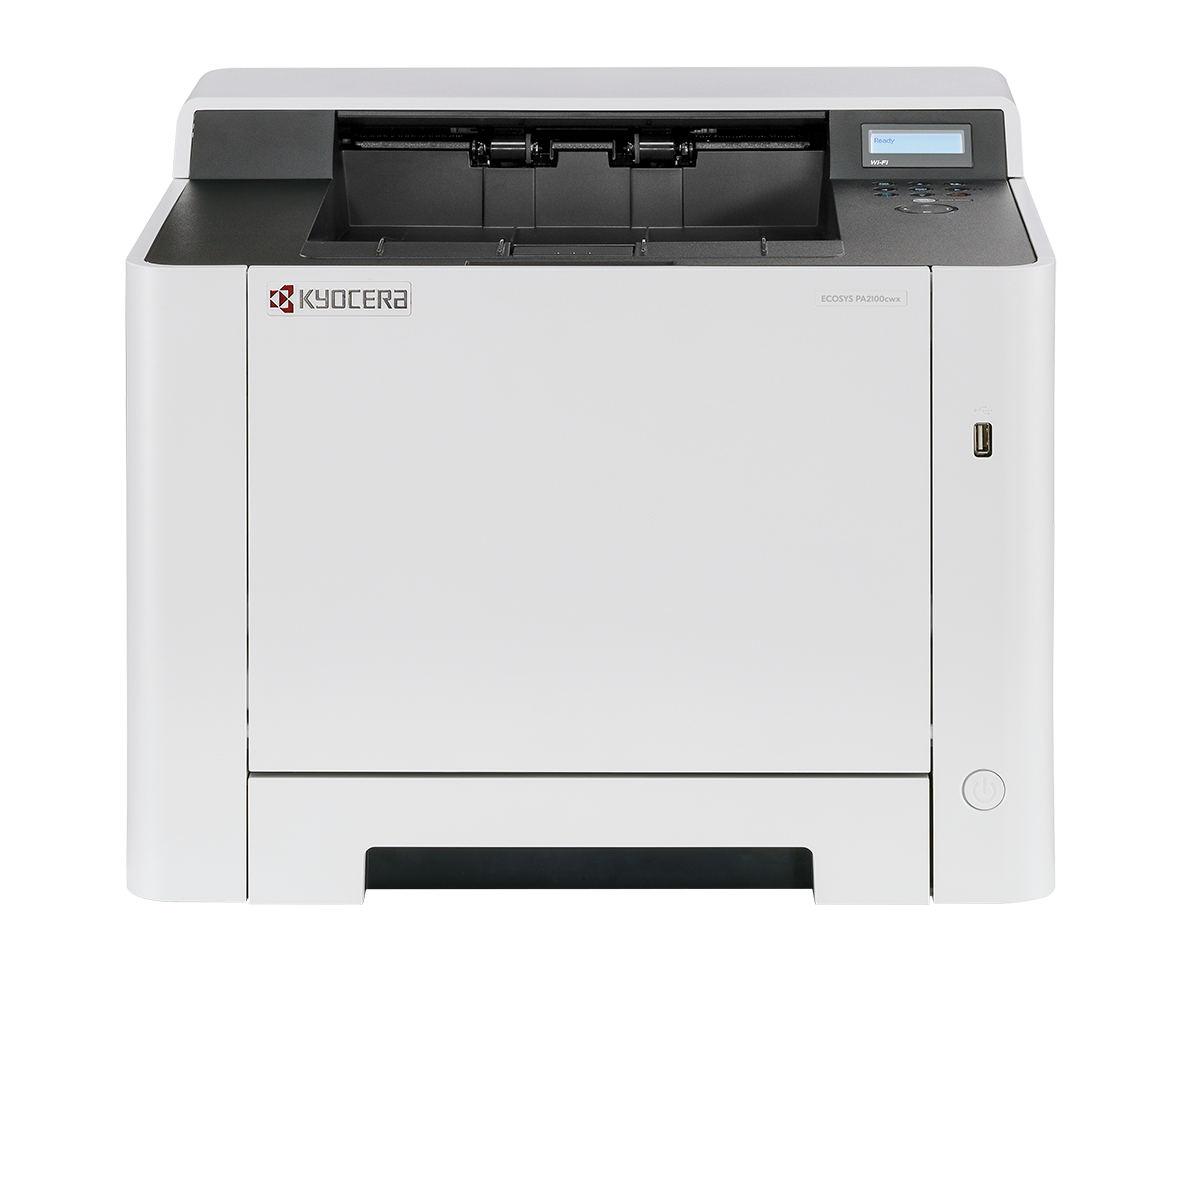 Принтер лазерный Kyocera Ecosys PA2100cwx, A4, цветной, 21 стр/мин (A4 ч/б), 21 стр/мин (A4 цв.), 1200x1200 dpi, дуплекс, сетевой, Wi-Fi, USB, белый (110C093NL0)